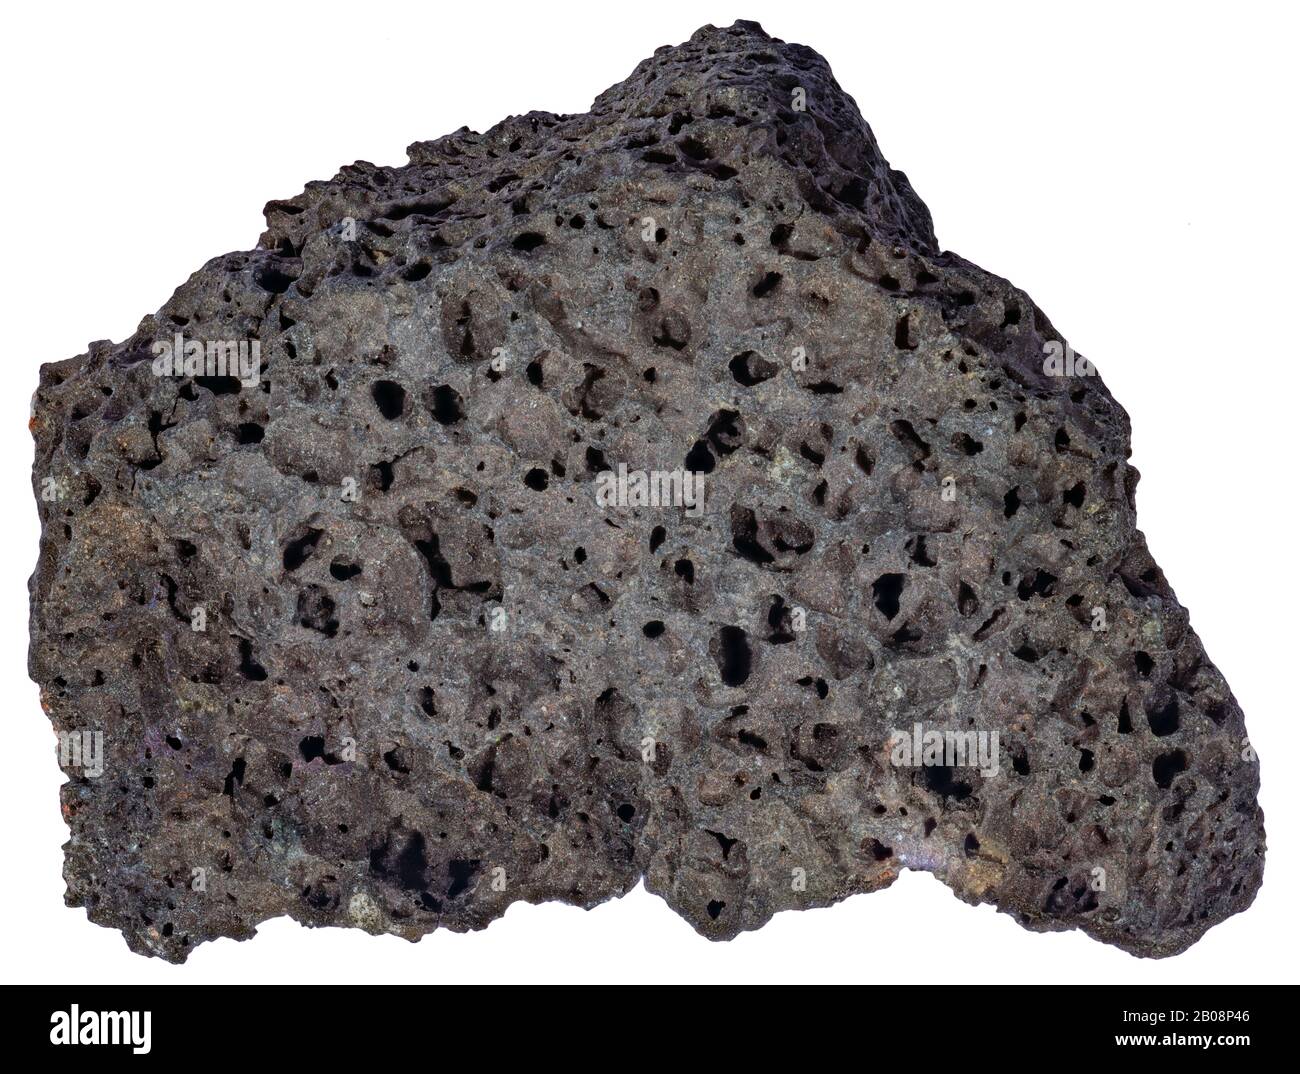 Tephrite, Igneous, Mexico Tephrite ist ein igneöses, vulkanisches Gestein, mit aphanitischer bis porphyritischer Struktur. Stockfoto